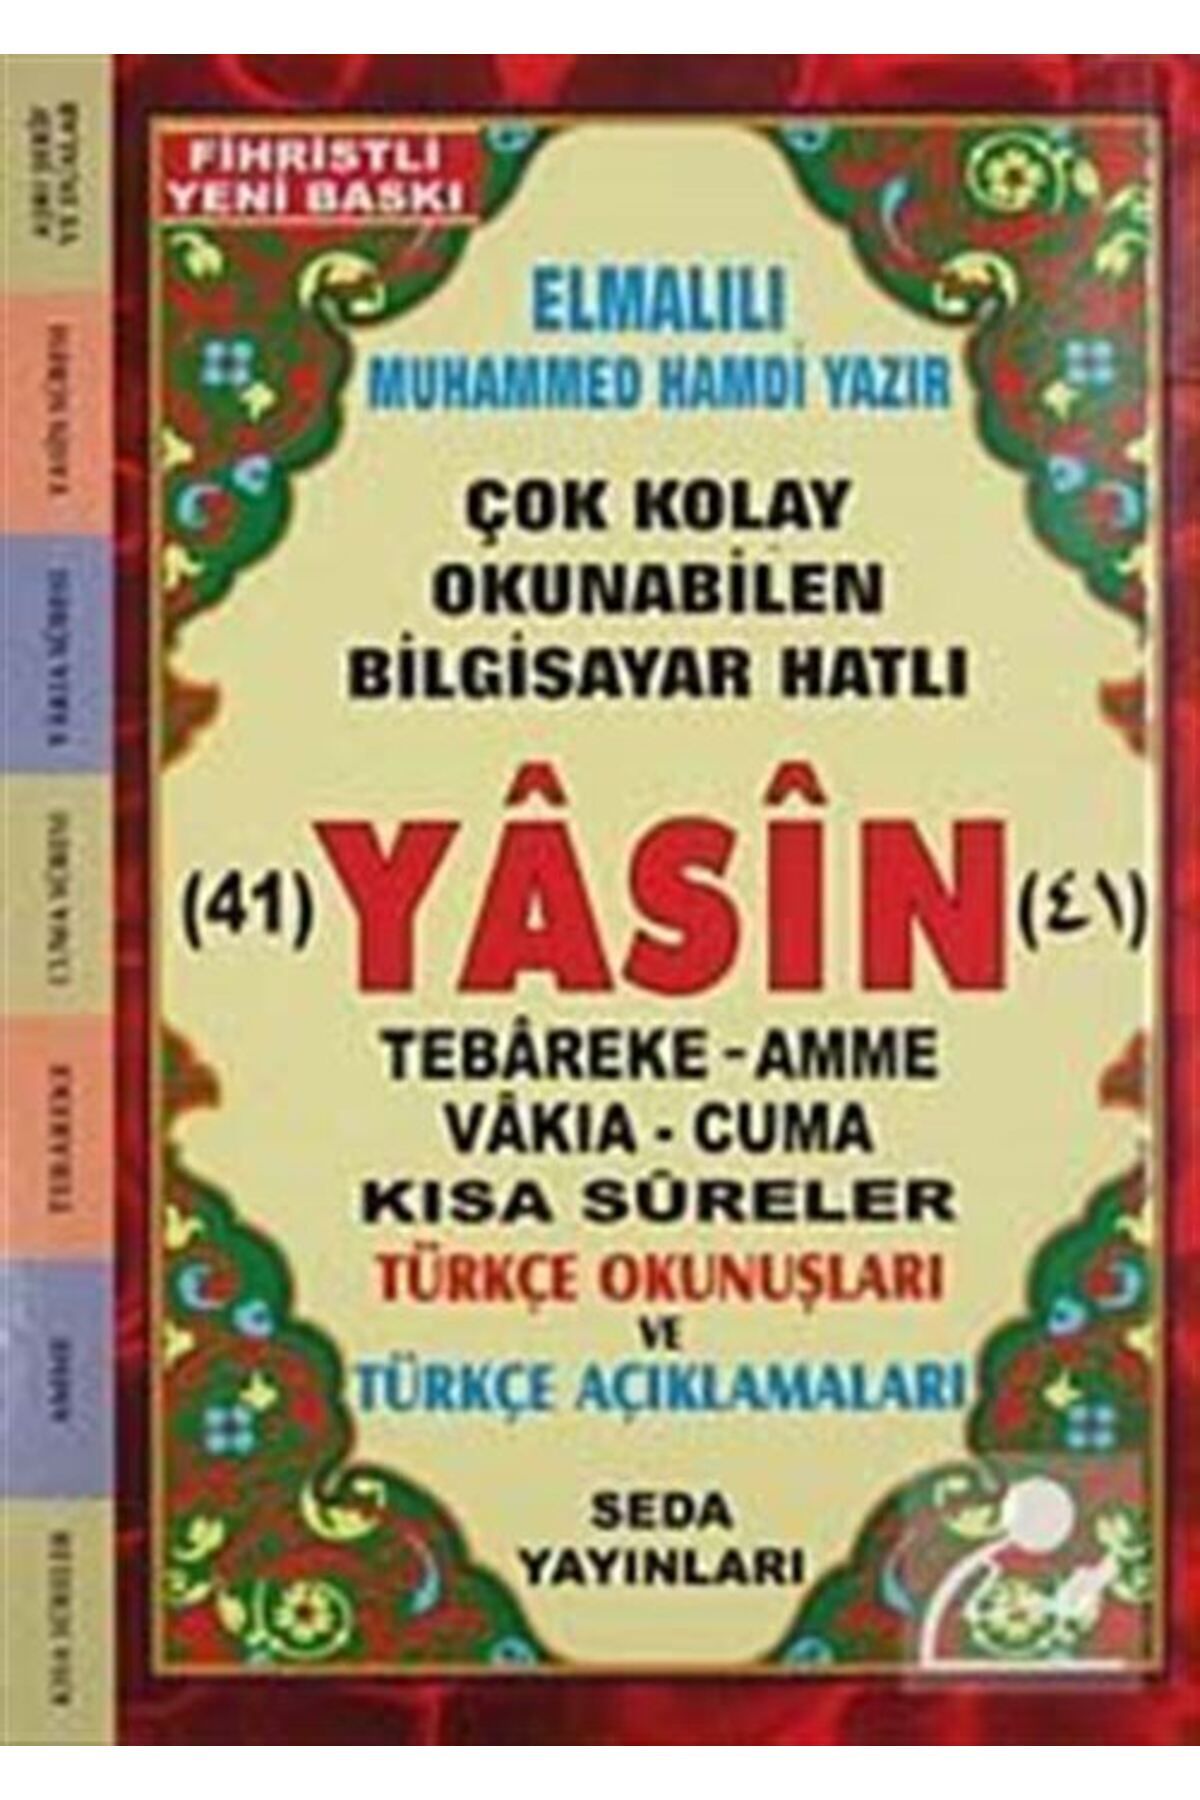 Seda Yayınları 41 Yasin Tebareke Amme Vakıa-cuma Ve Kısa Sureler Türkçe Okunuşları Ve Türkçe Açıklamaları